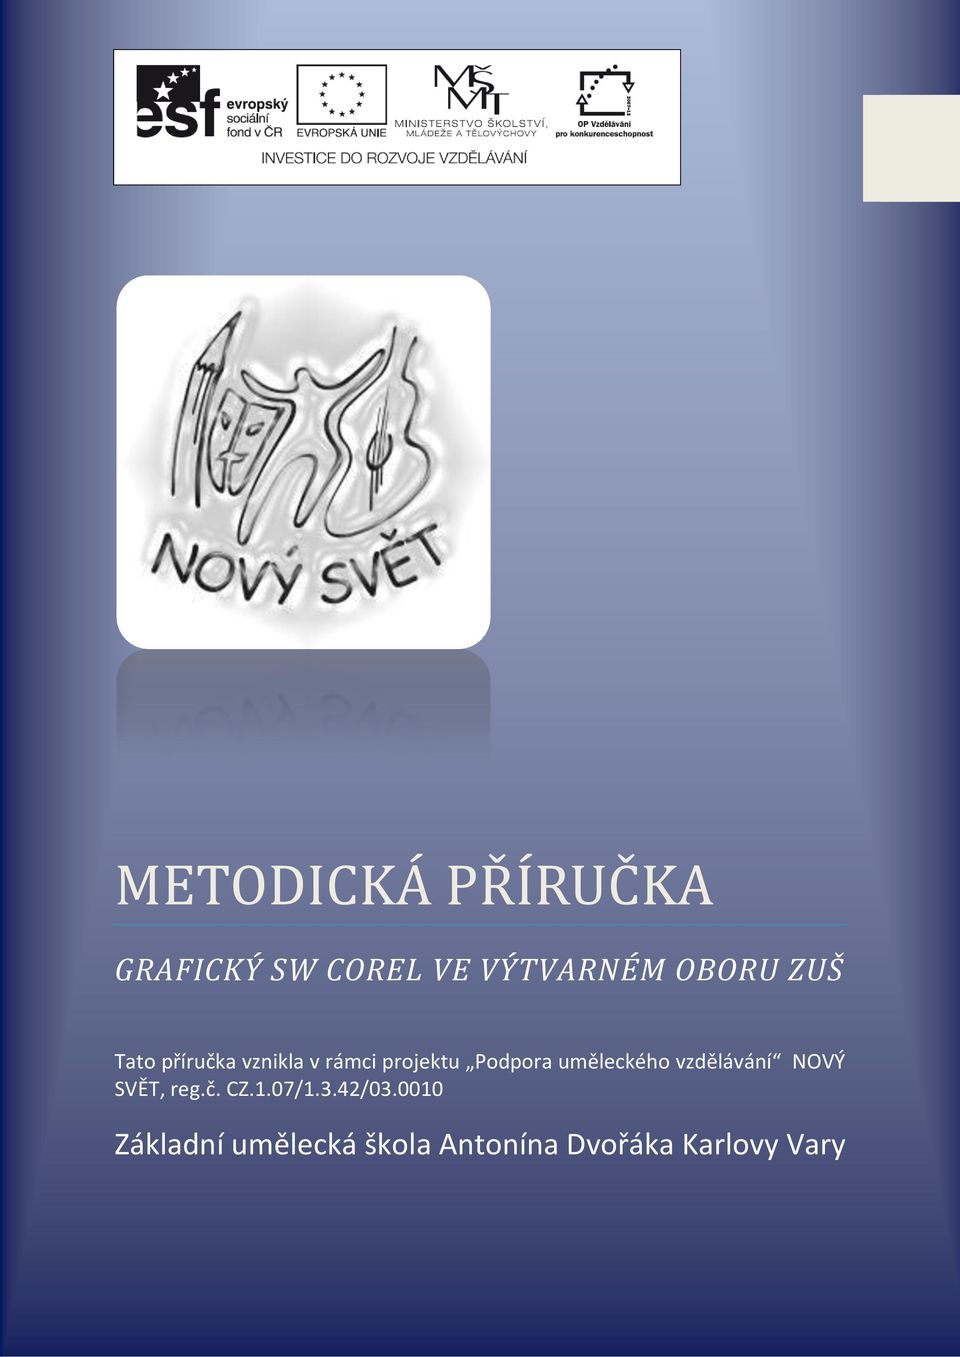 uměleckého vzdělávání NOVÝ SVĚT, reg.č. CZ.1.07/1.3.